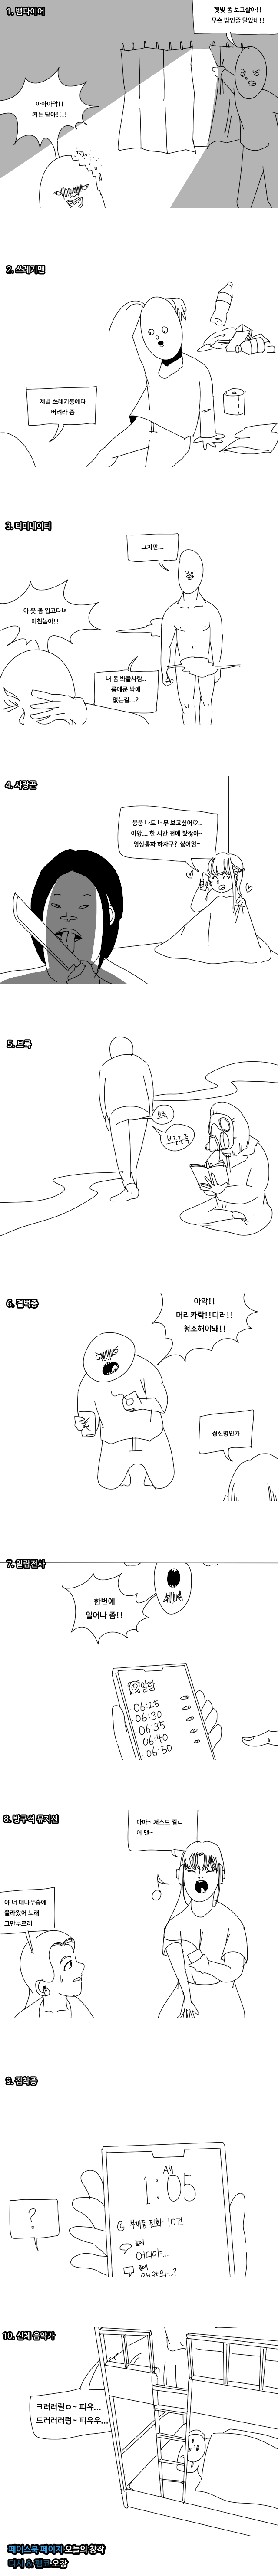 룸메 극혐10.png